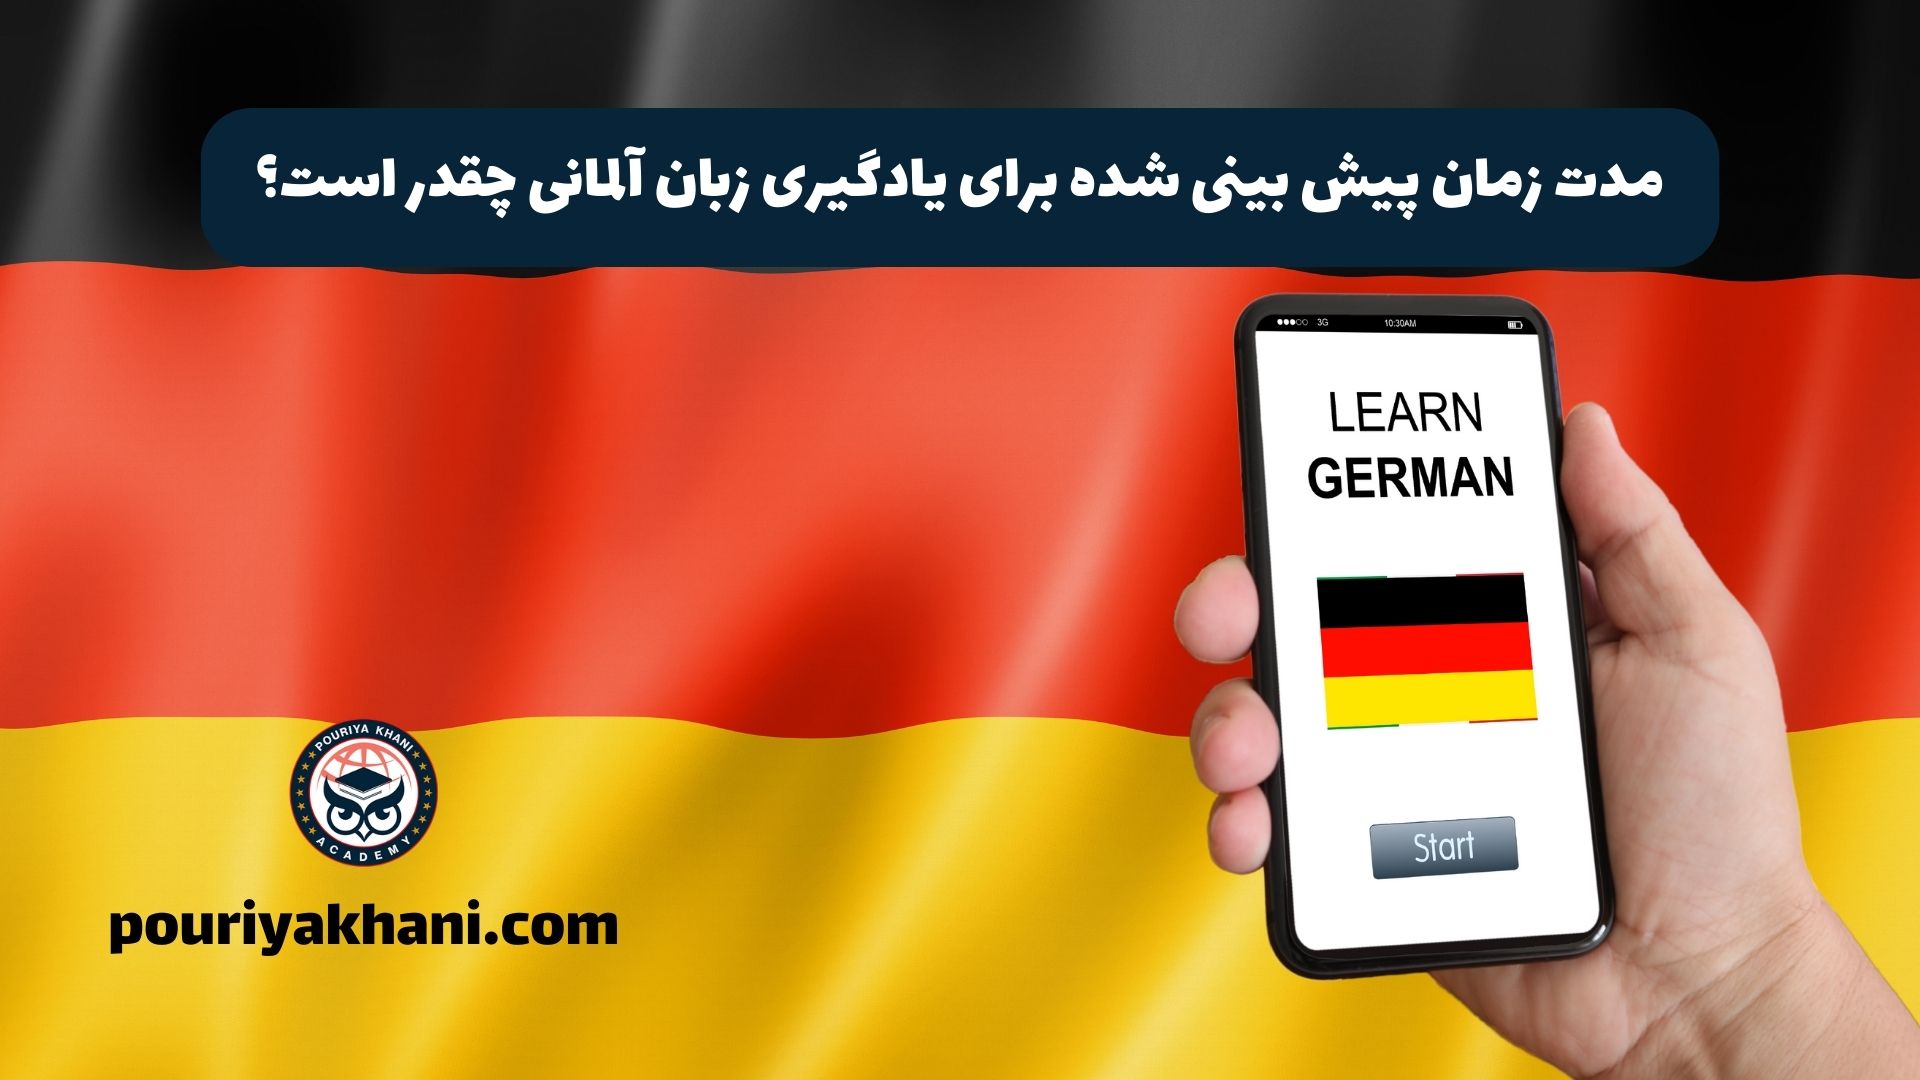 مدت زمان پیش بینی شده برای یادگیری زبان آلمانی چقدر است؟